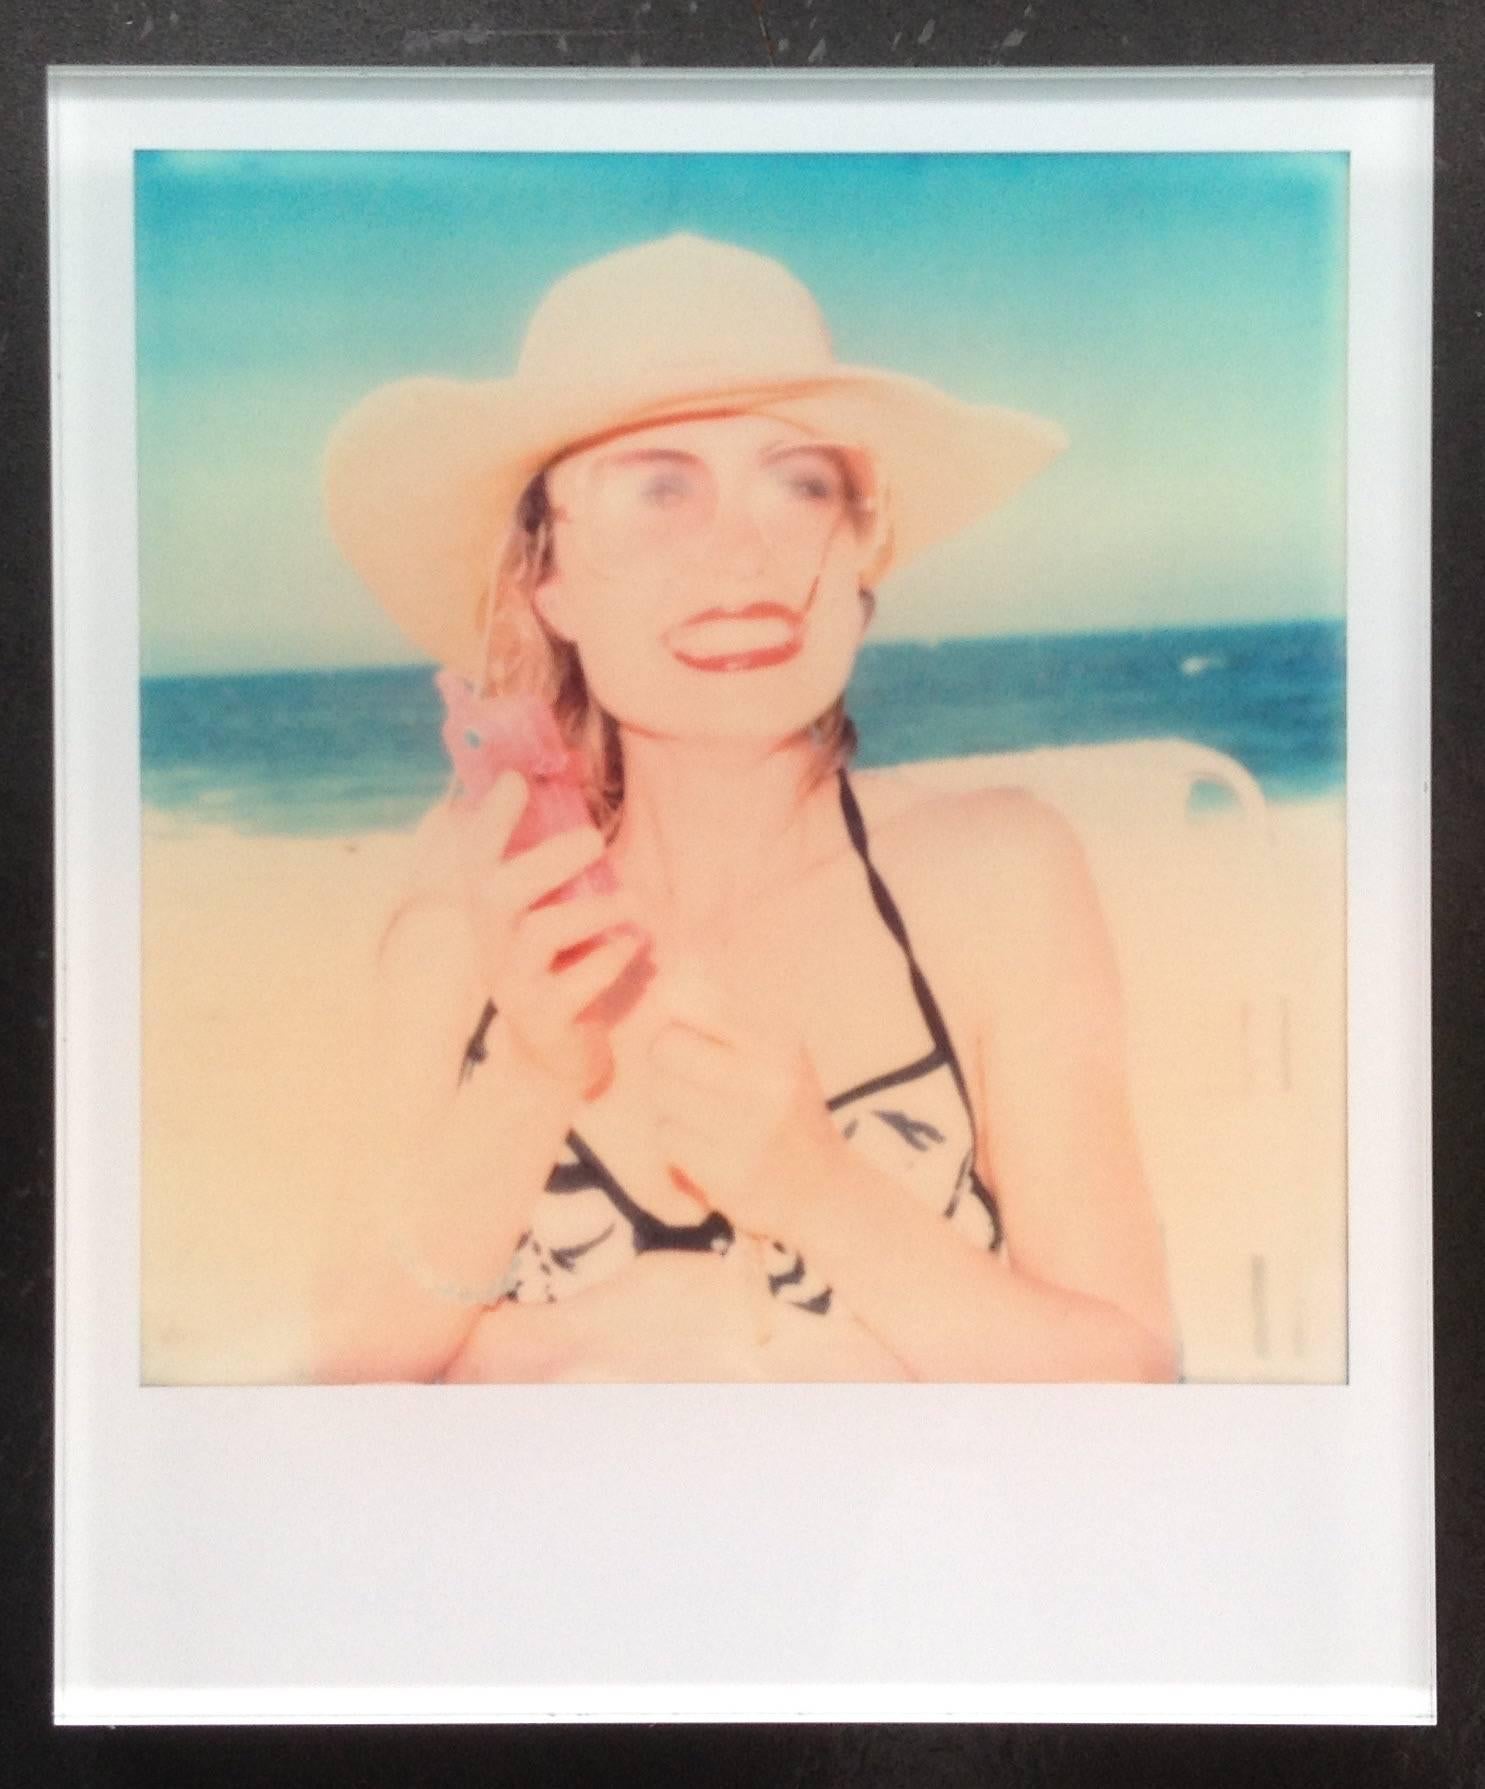 Die Minis von Stefanie Schneider

Ohne Titel #11" (Beachshoot) mit Radha Mitchell, 2005
verso signiert und Signaturmarke
Digitale Lambda-Farbfotografien auf der Grundlage eines Polaroids

Offene Editionen in Polaroidgröße 1999-2013
10,7 x 8,8cm